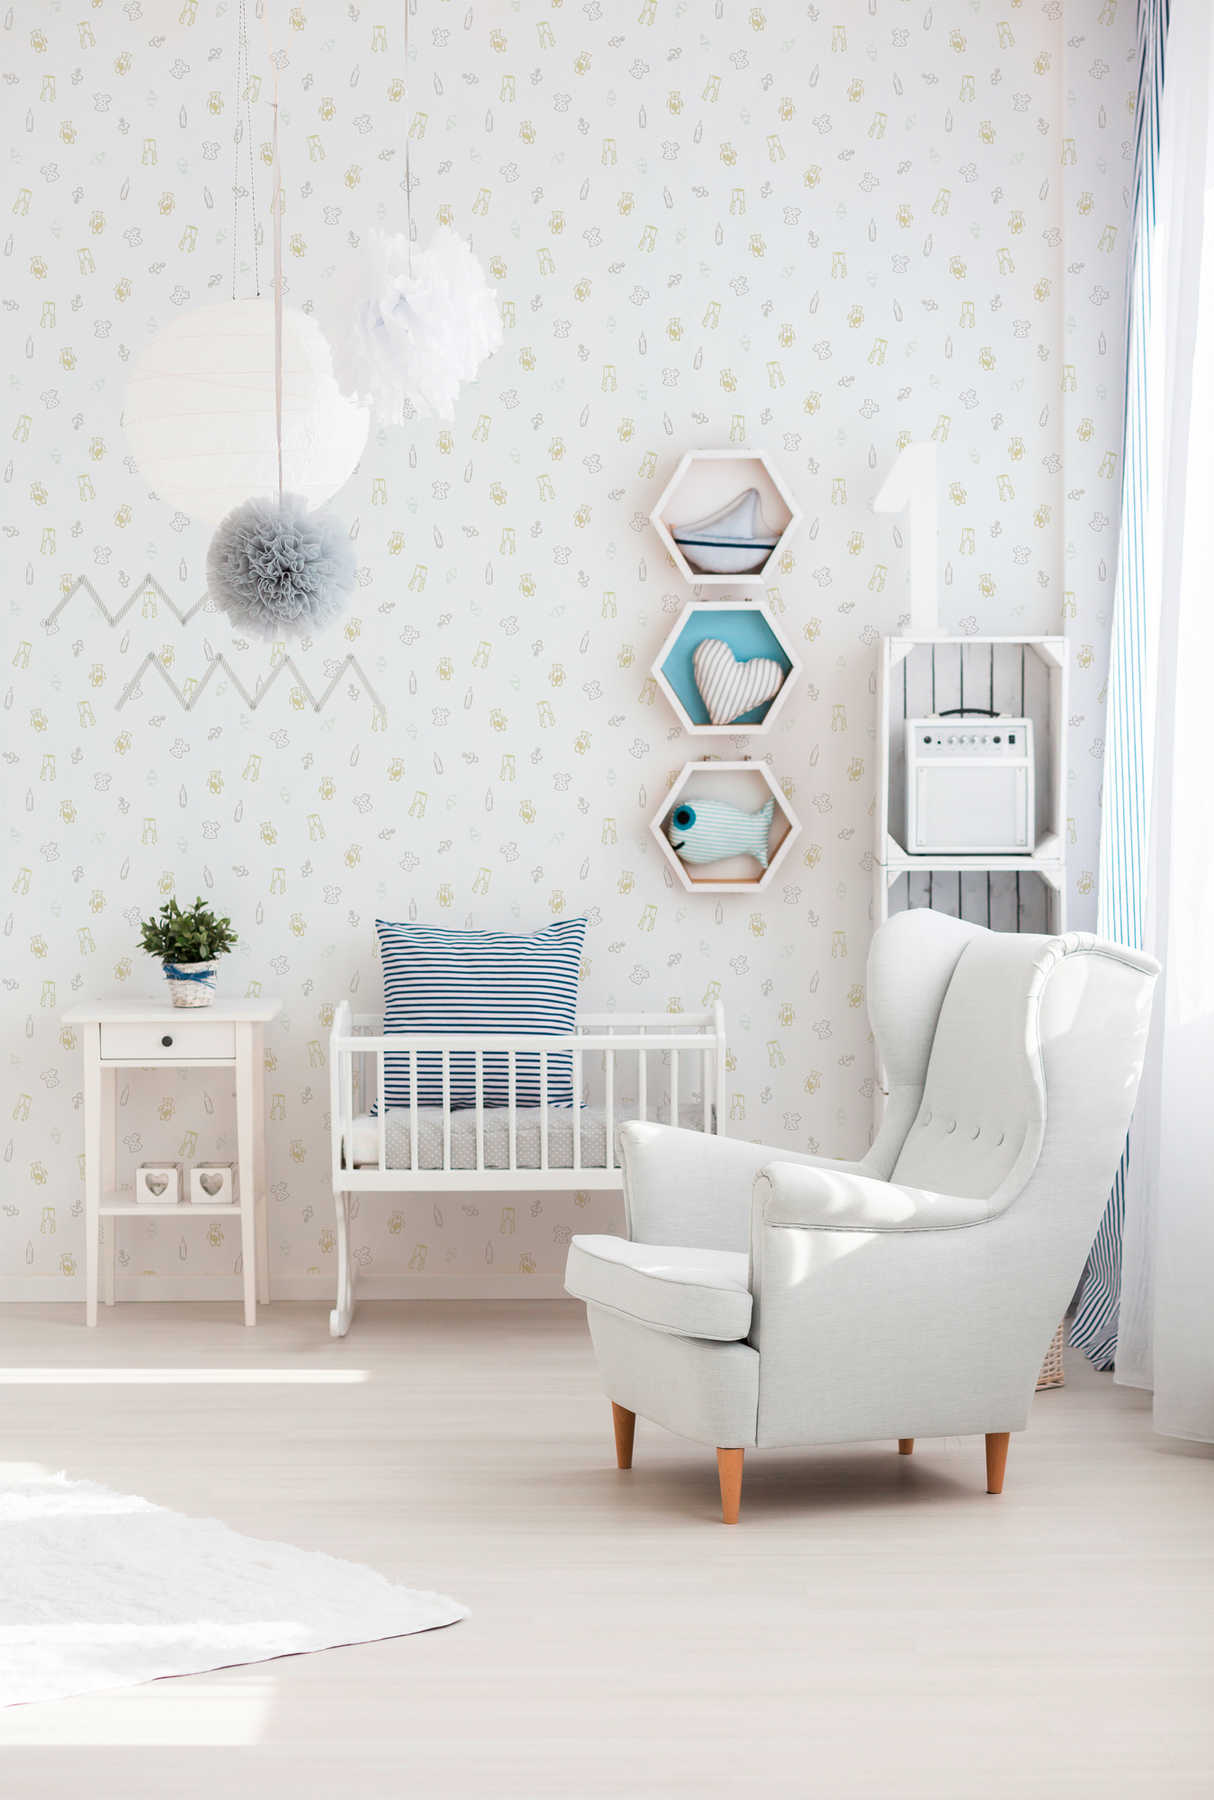             Papier peint chambre bébé avec motif mignon - métallique, blanc
        